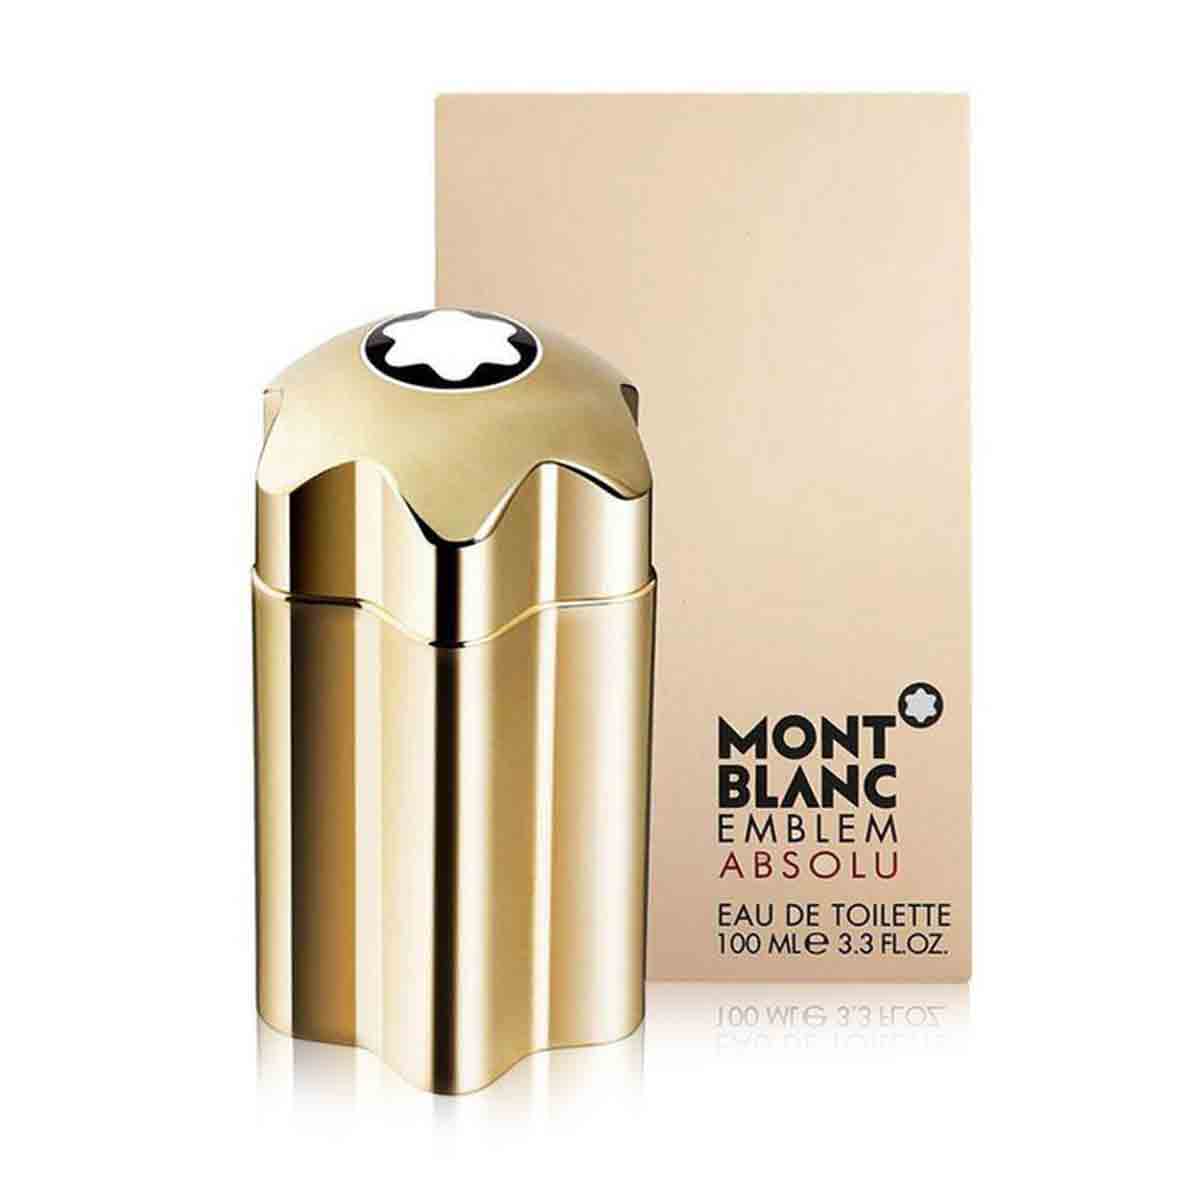 MontBlanc Emblem Absolu eau de toilette men xribbonline perfume fragrance shop online